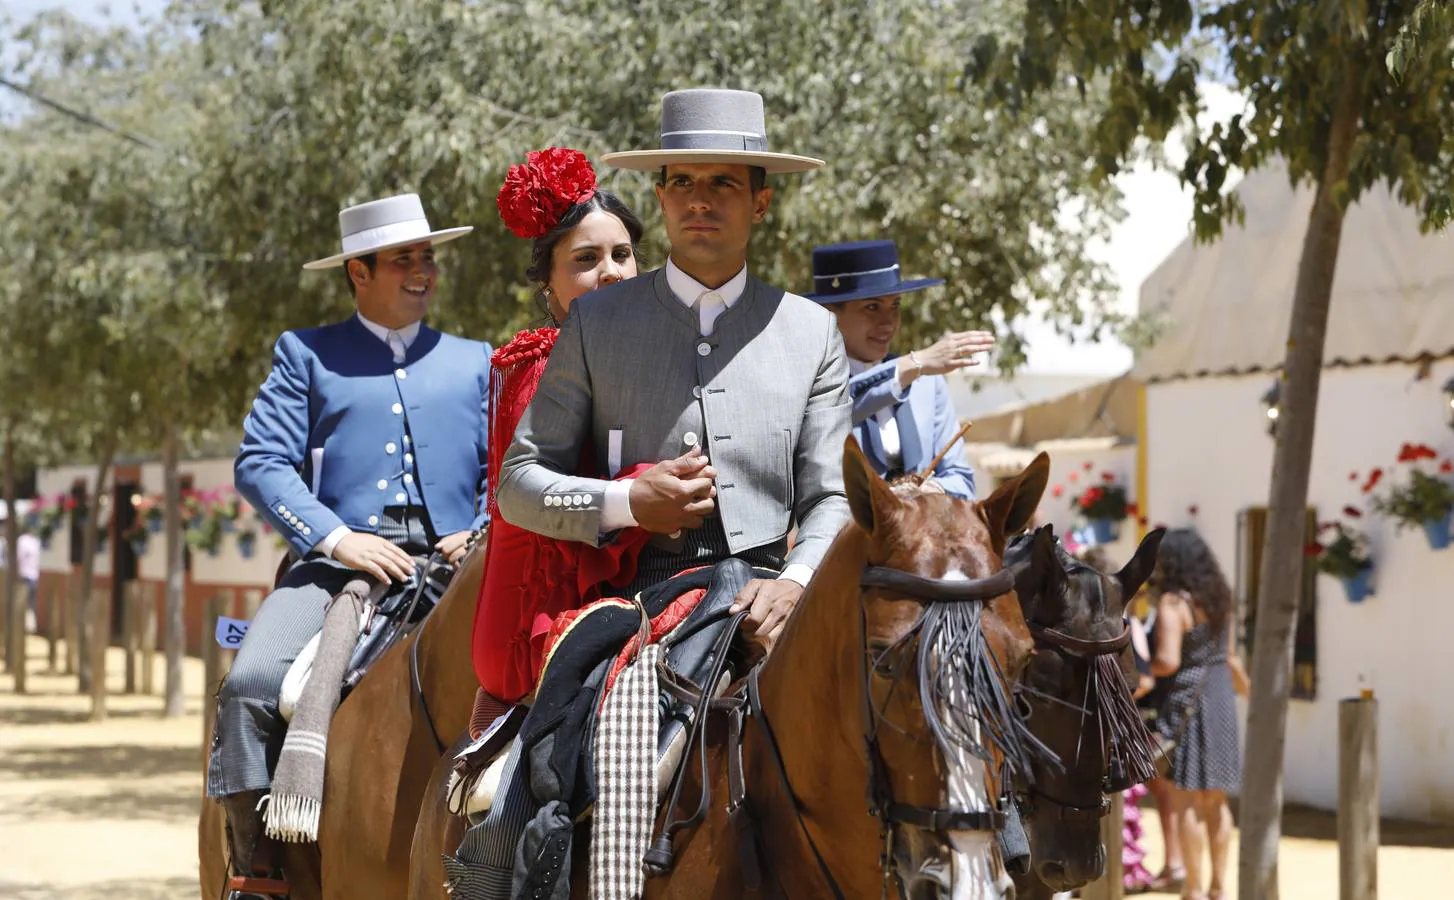 La jornada del jueves de Feria en Córdoba, en imágenes